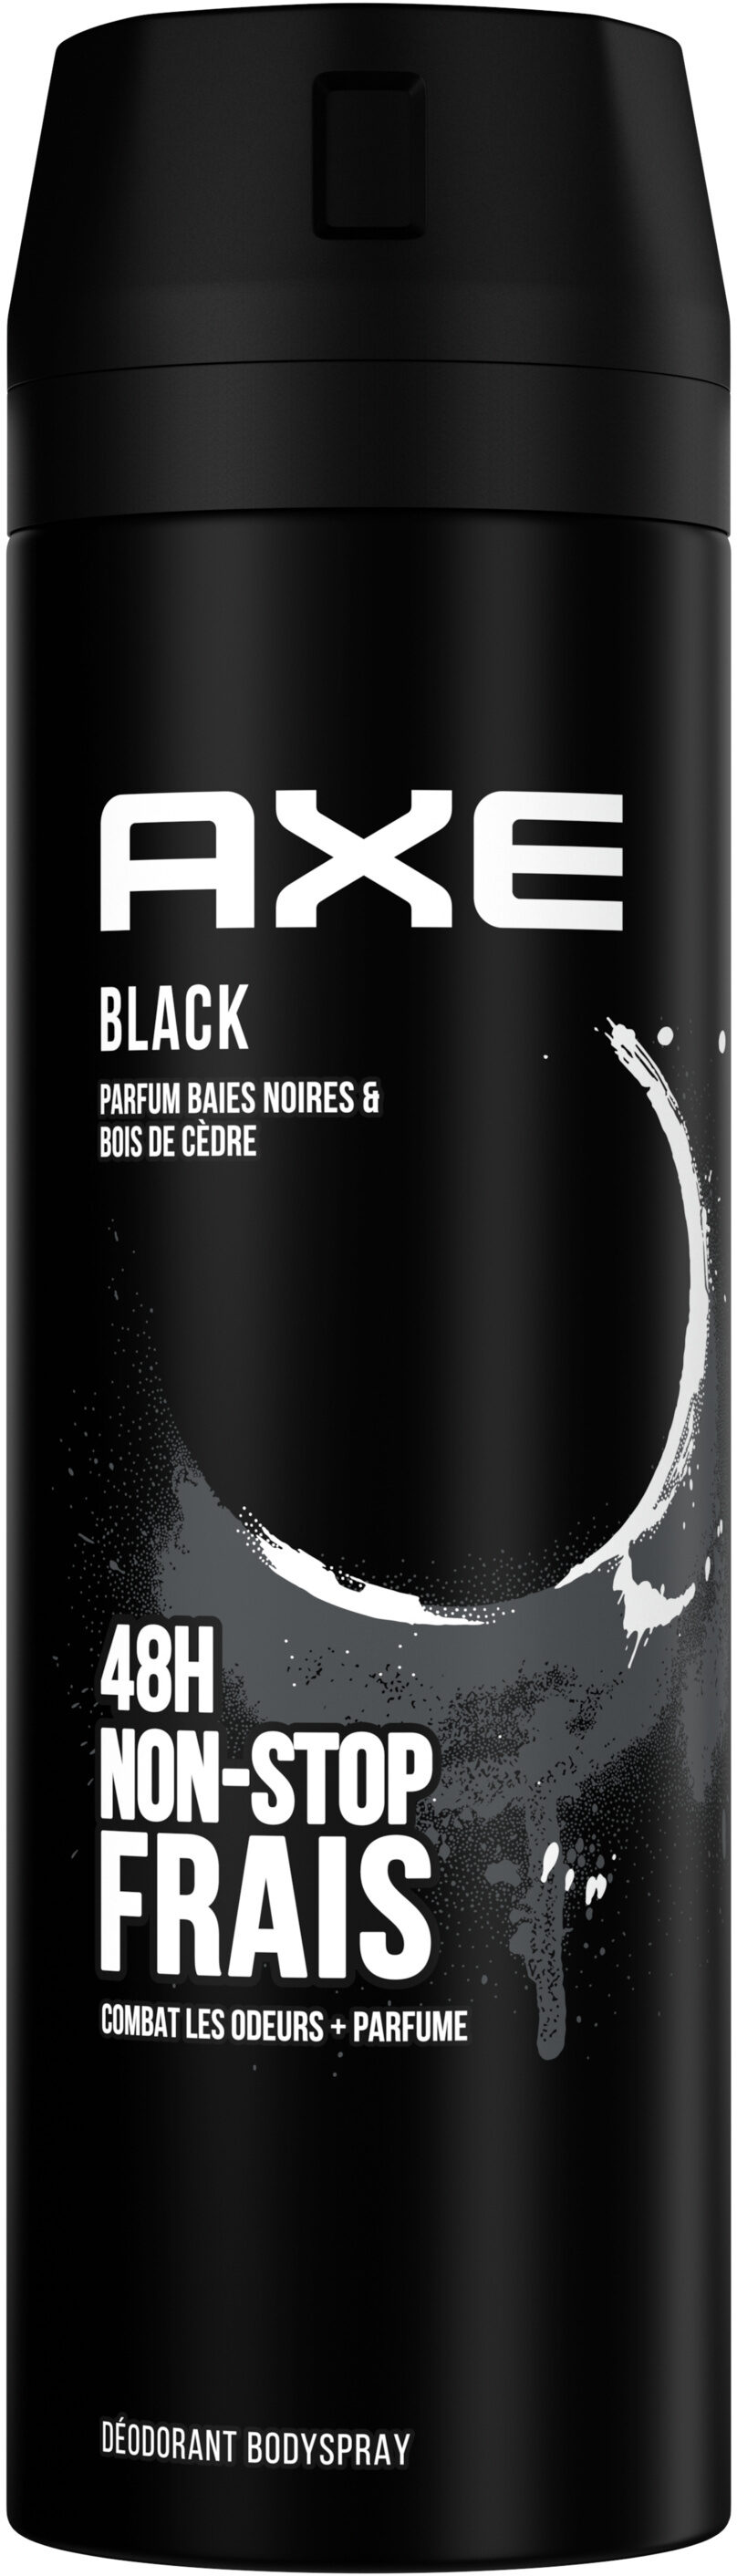 Axe Déodorant Homme Bodyspray Black 48h Non-Stop Frais 200ml - Produit